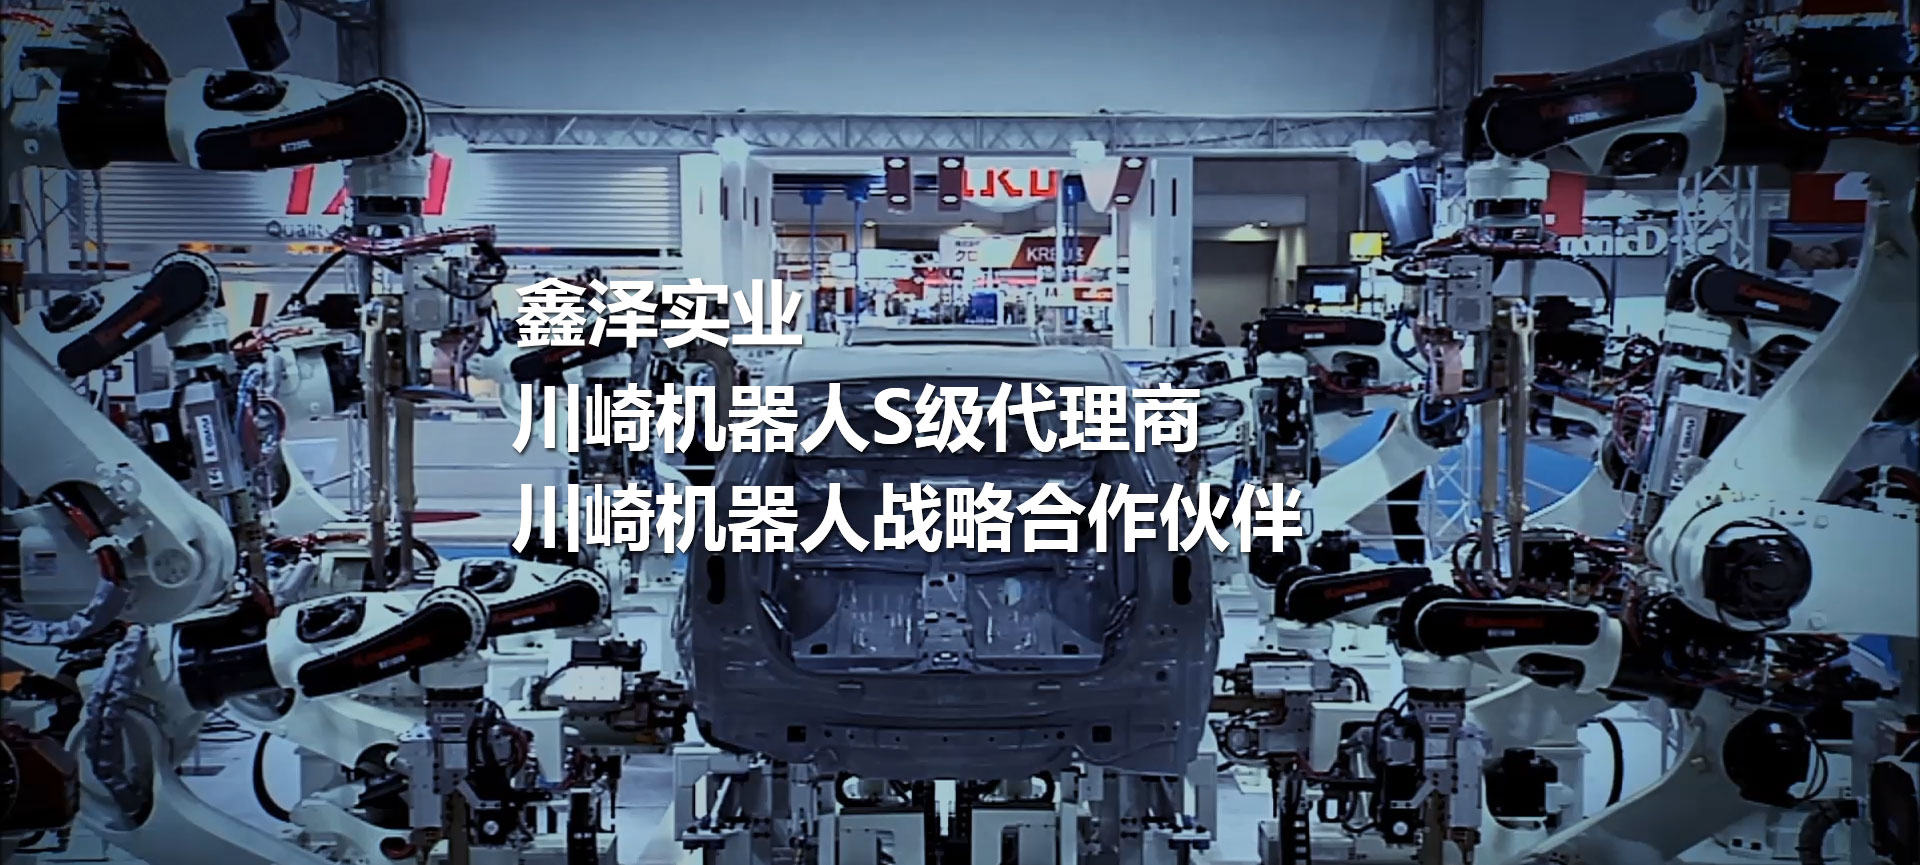 川崎机器人、码垛机器人、喷涂机器人、工业机器人、焊接机器人、搬运机器人